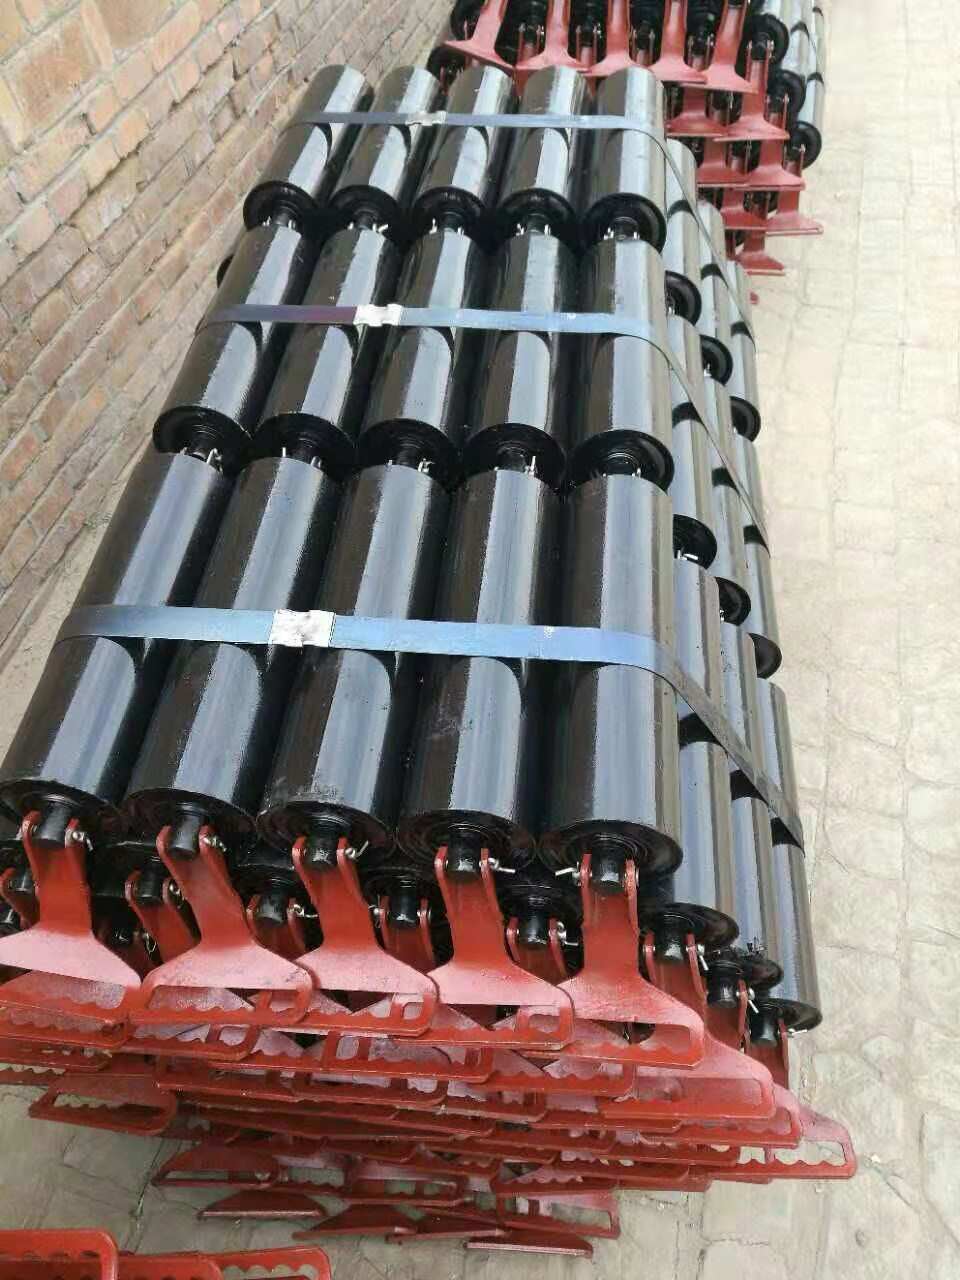 conveyor rollers idlers